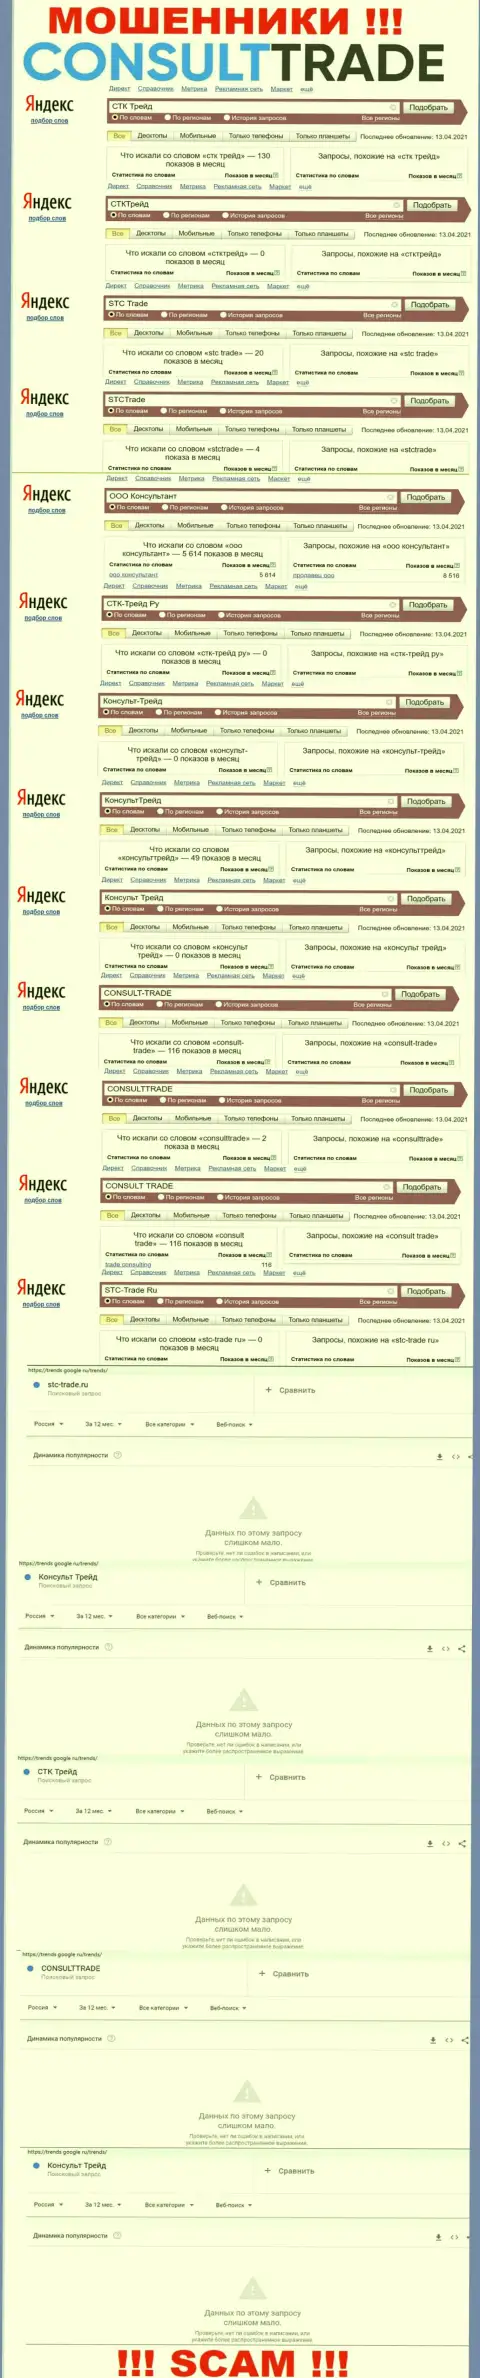 Скриншот результатов поисковых запросов по преступно действующей конторе STC-Trade Ru